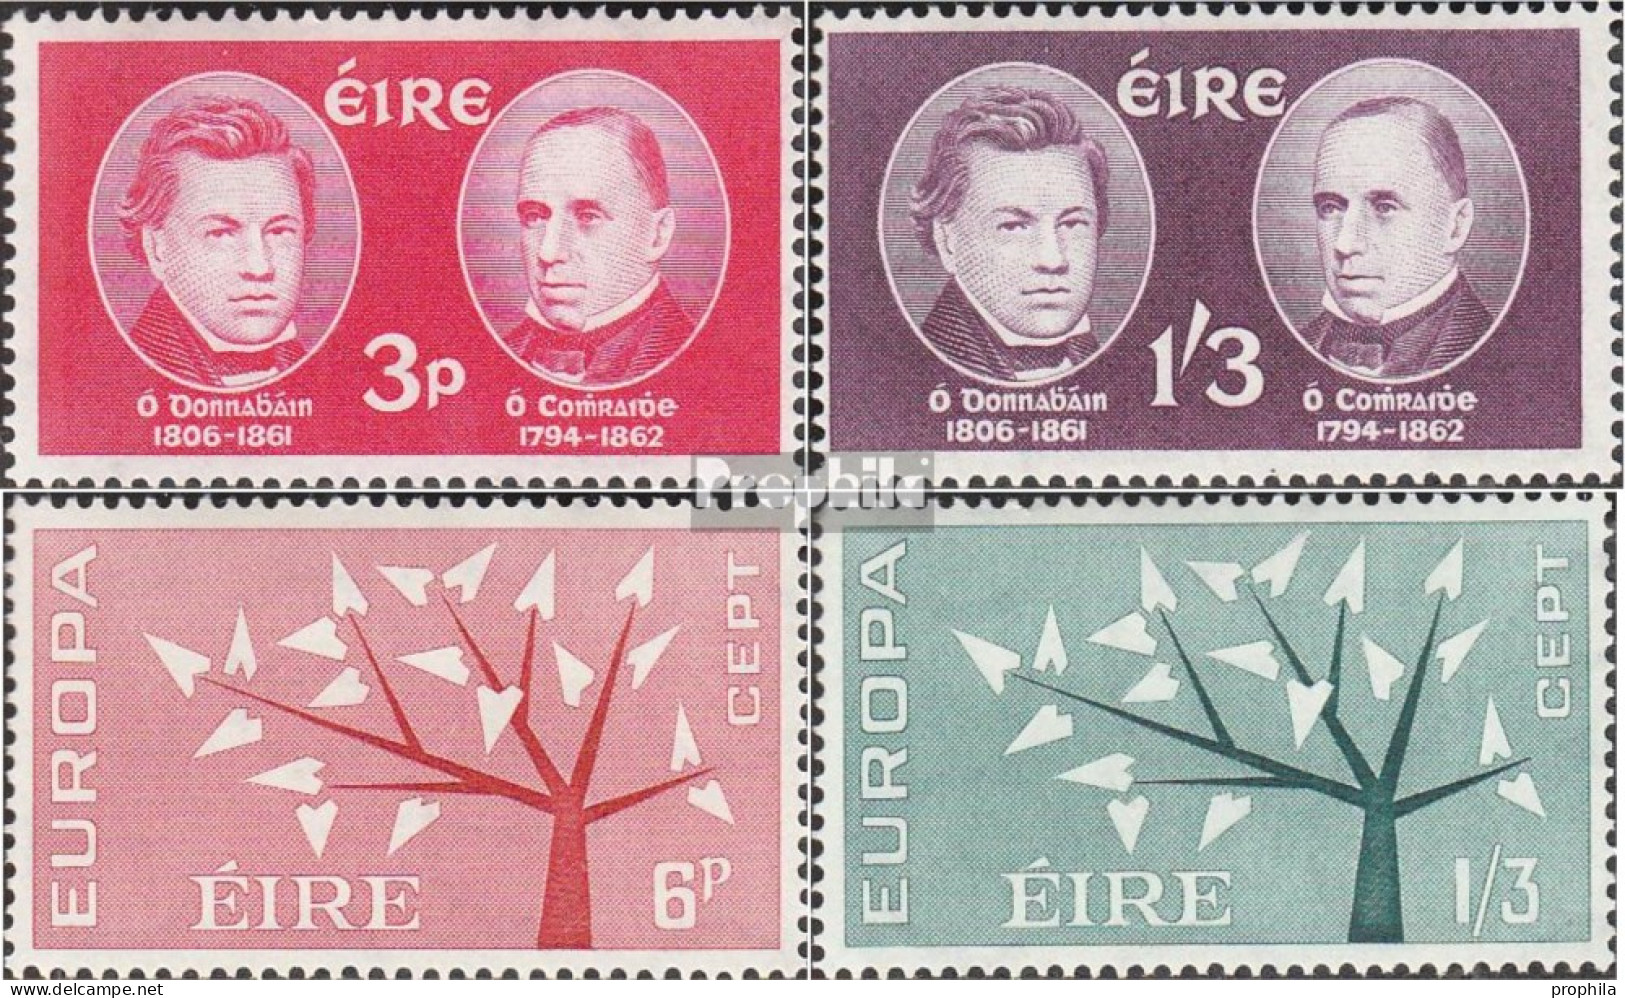 Irland Postfrisch Gelehrte 1962 Todestage, Europa - Ungebraucht